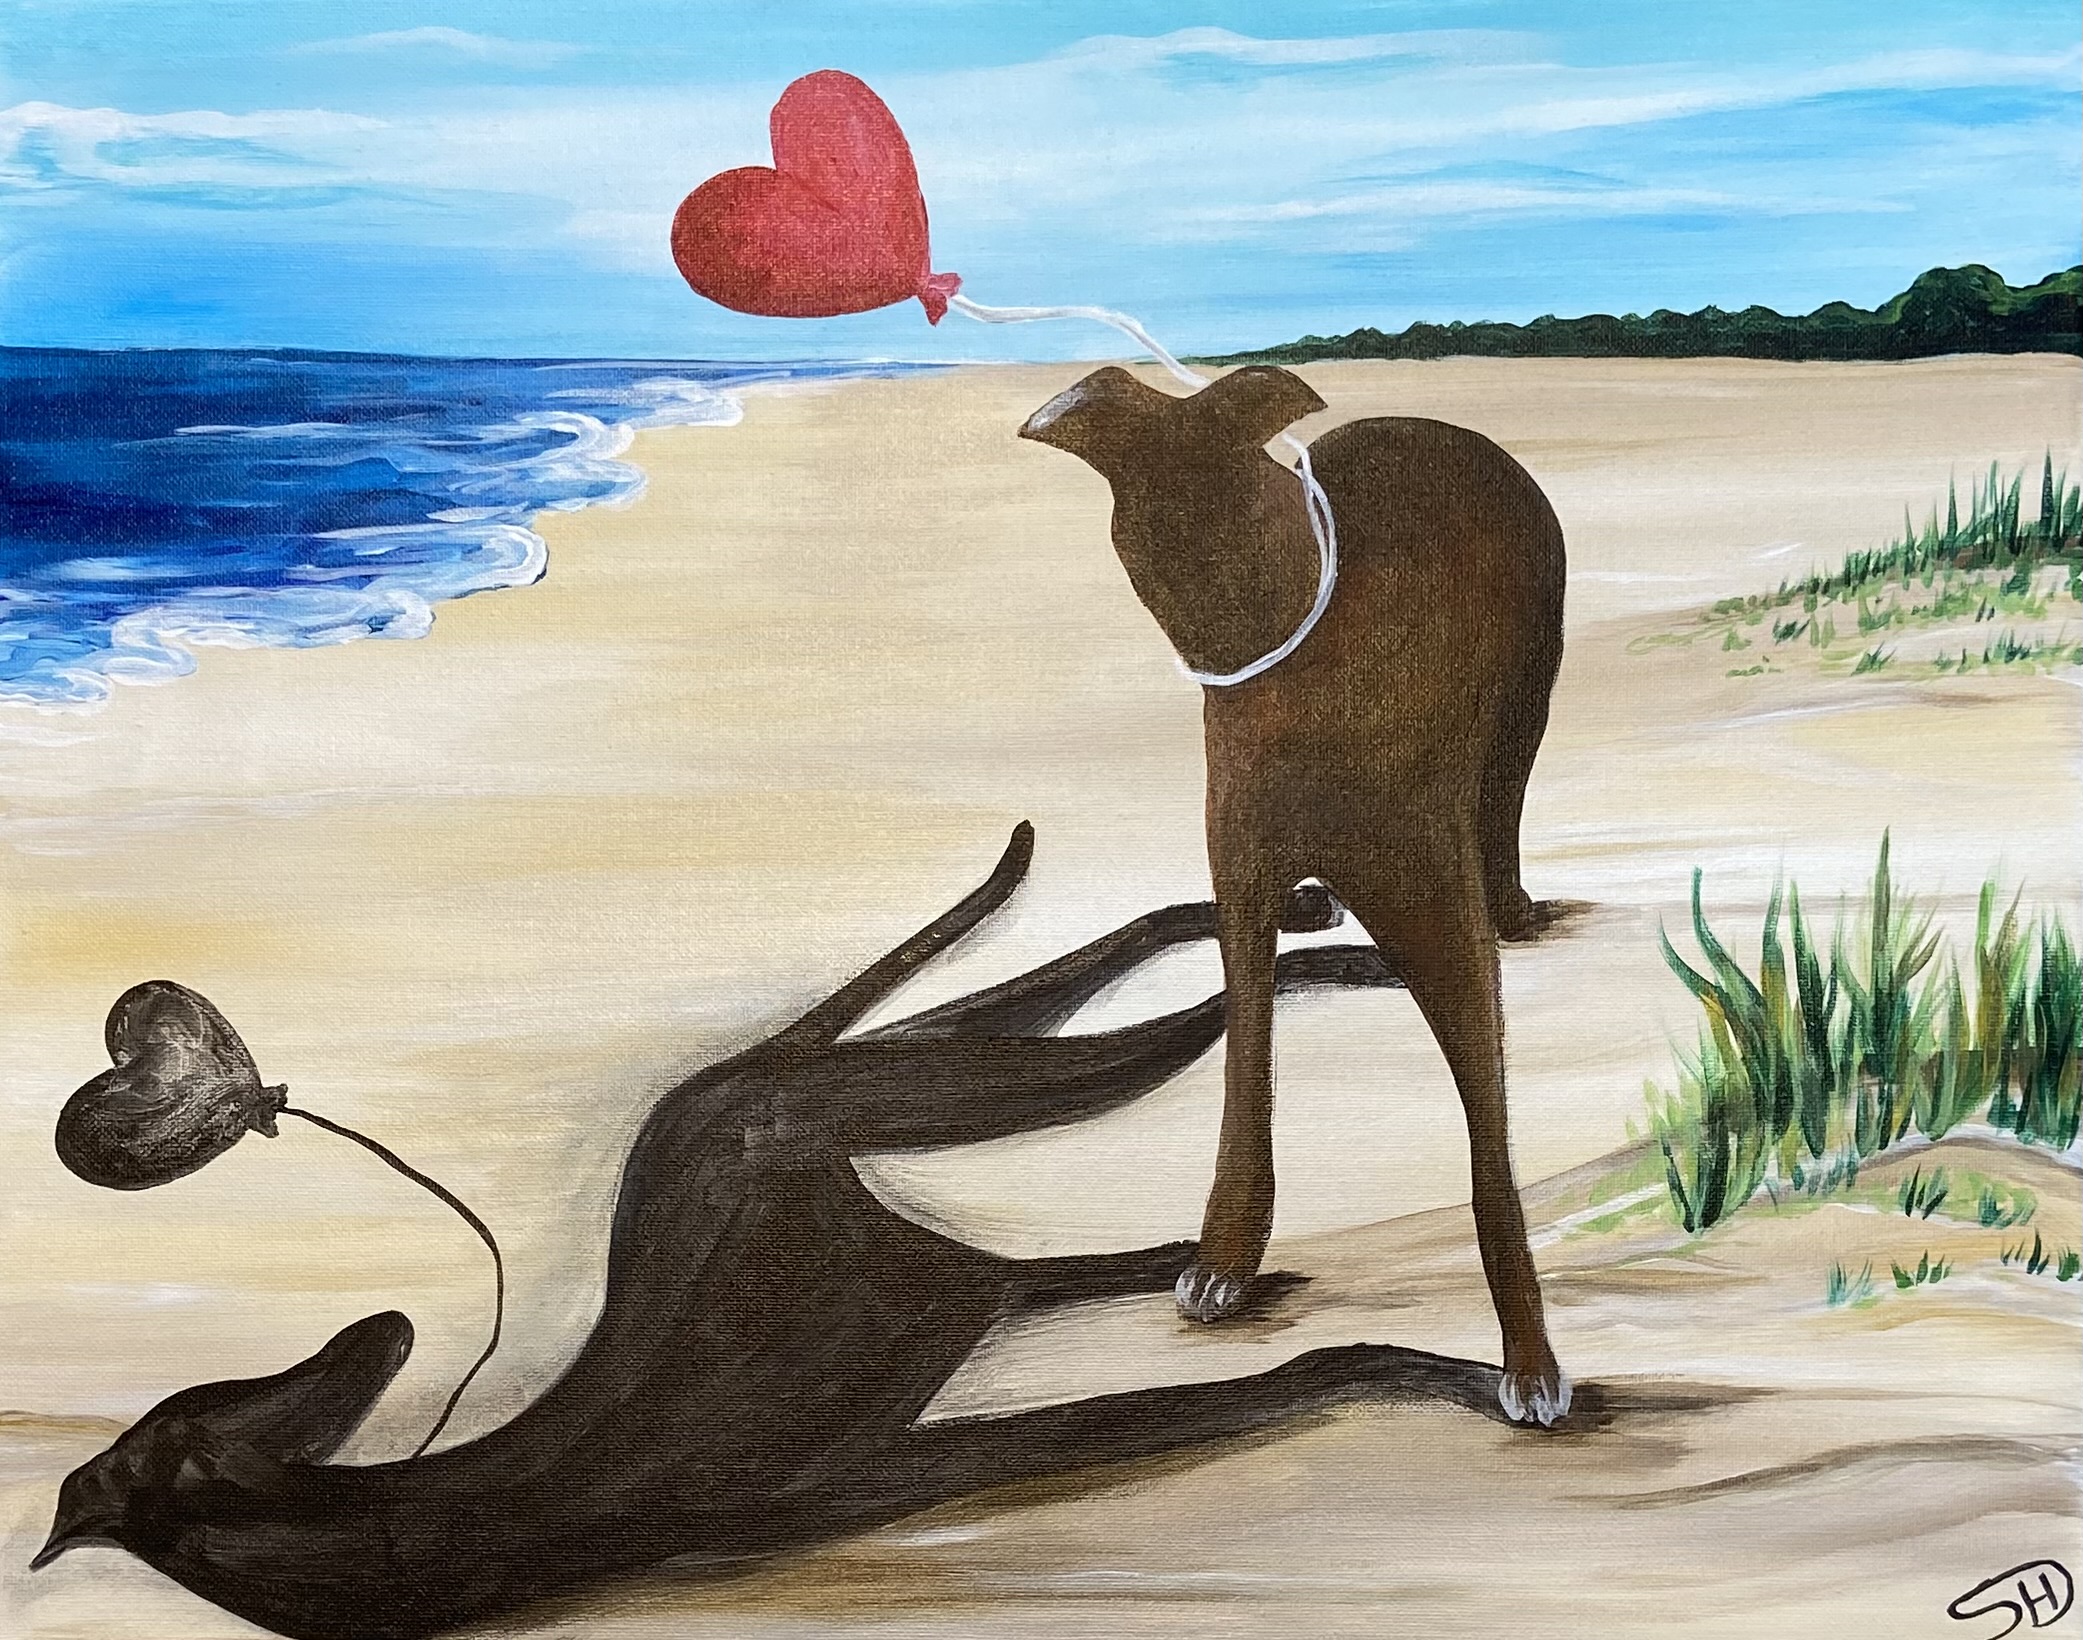 Greyhound Love